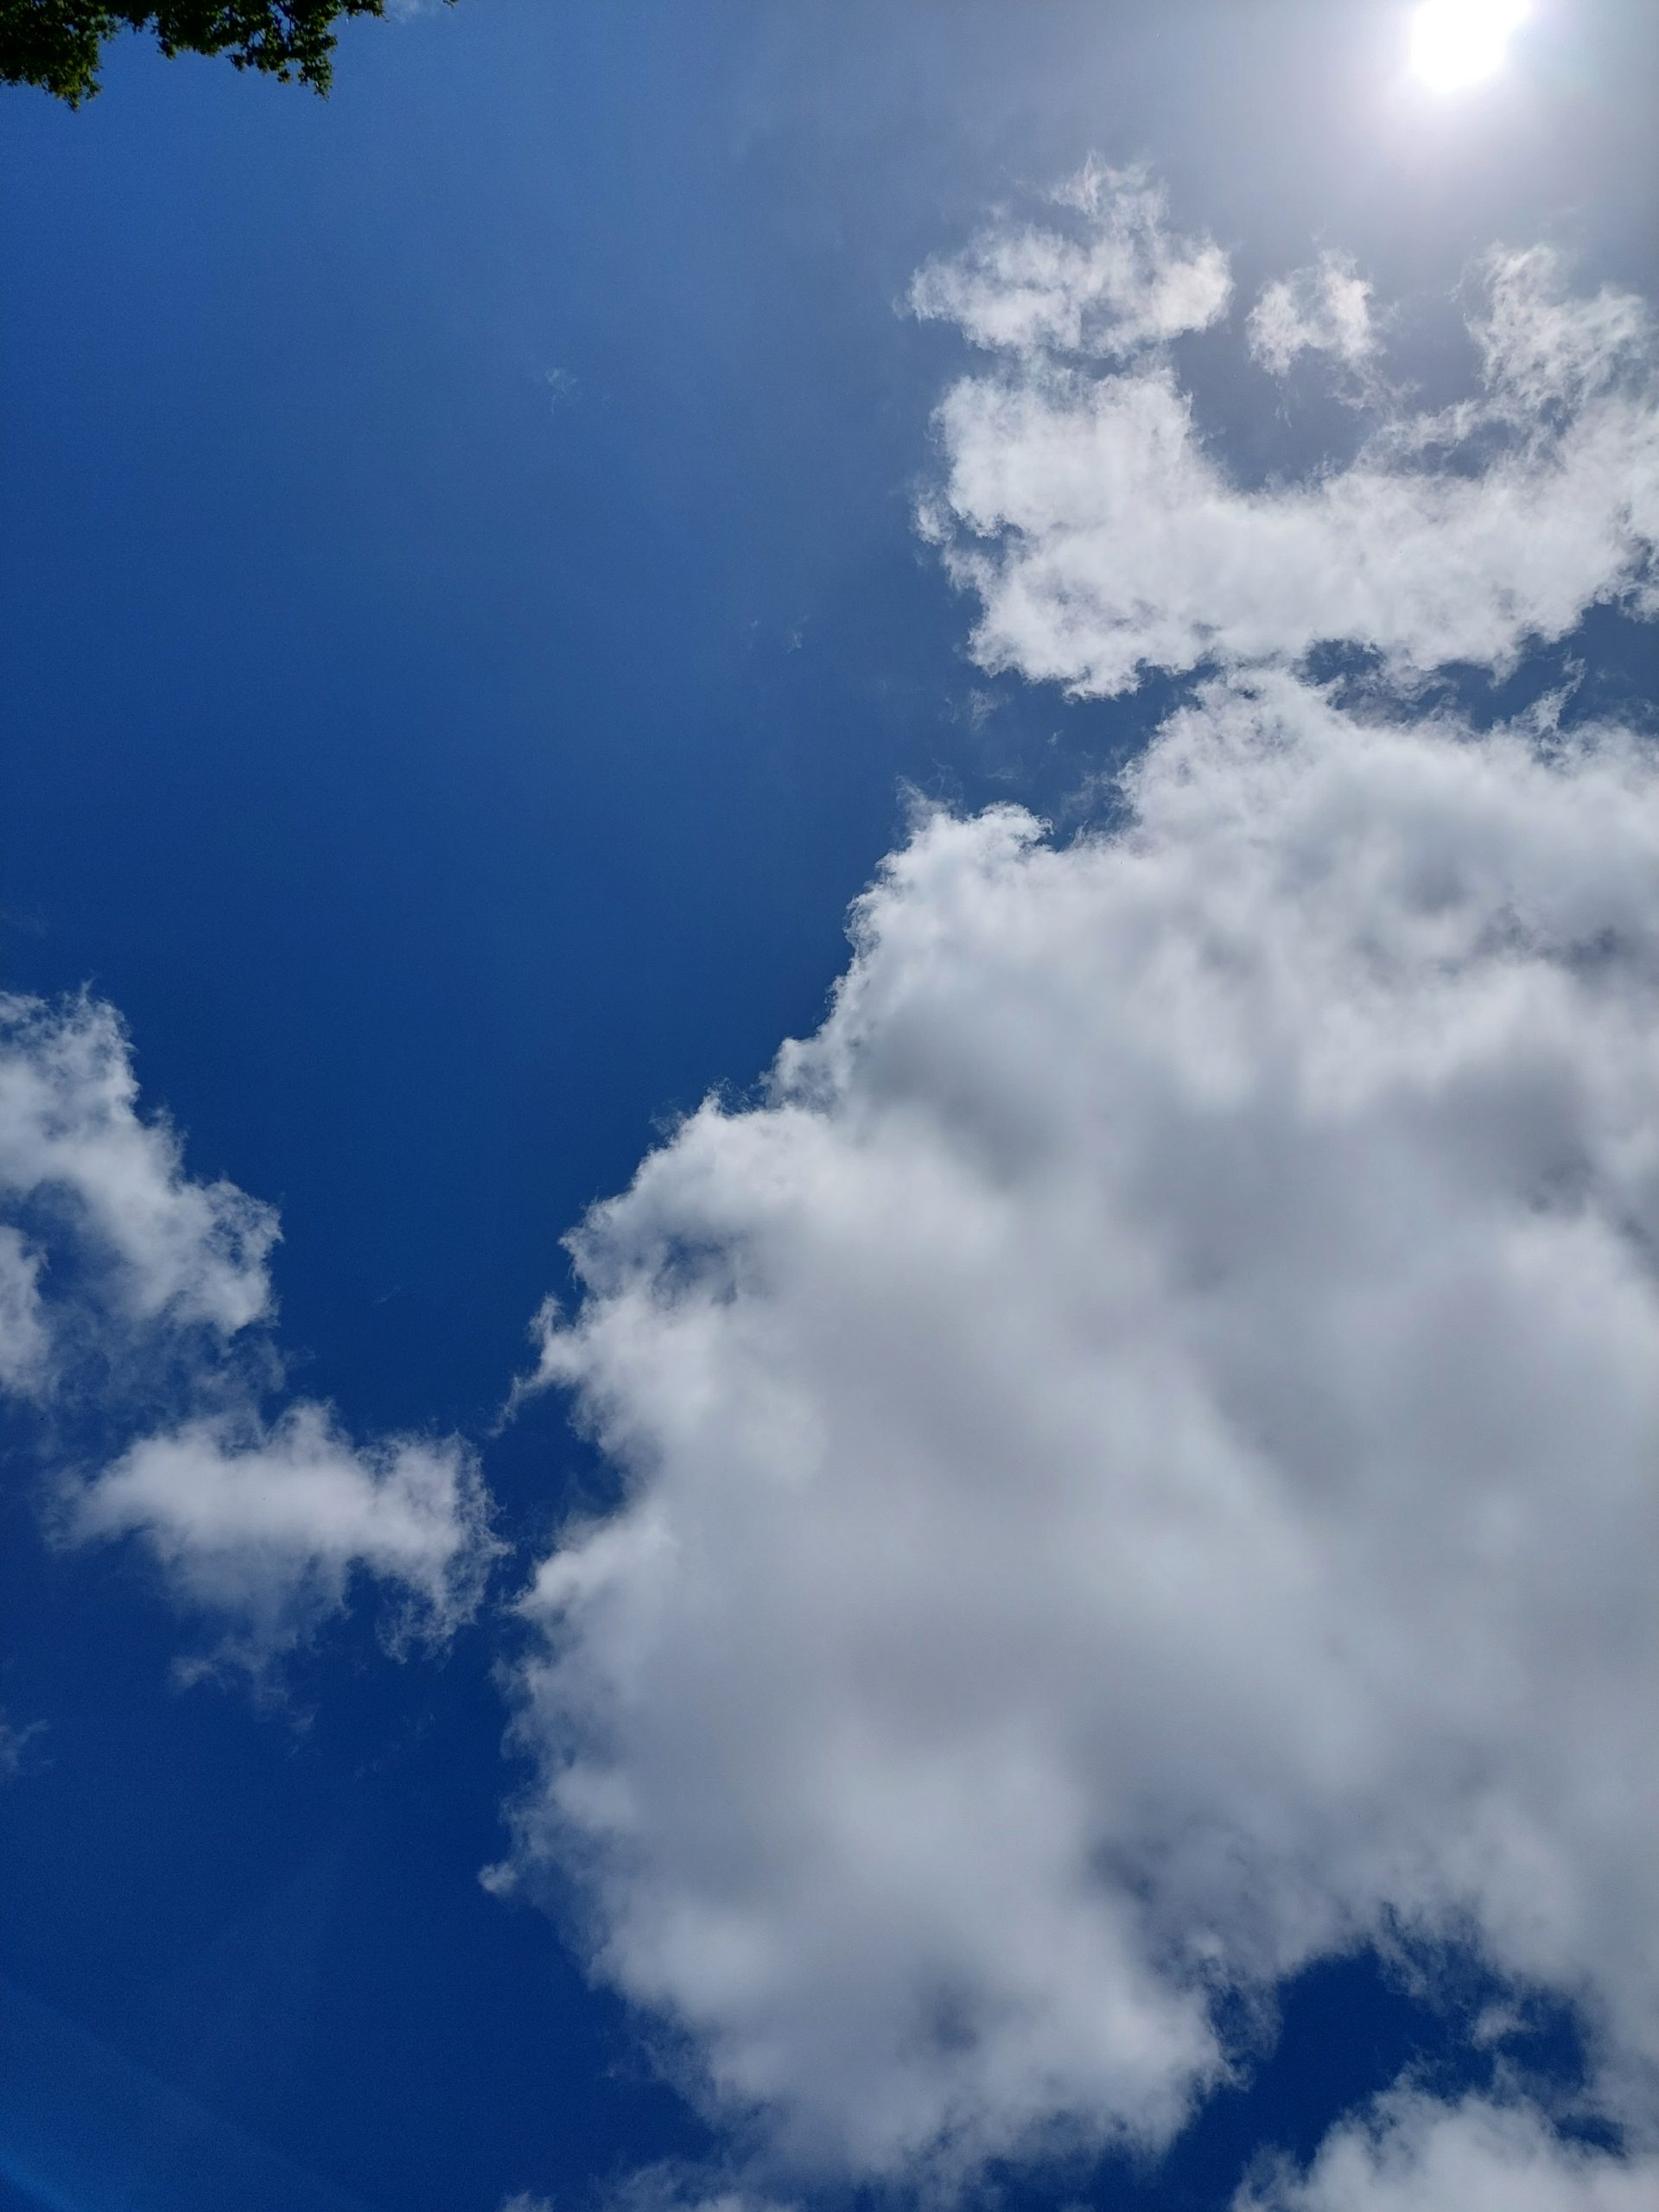 Fluffy blue clouds in a blue sky